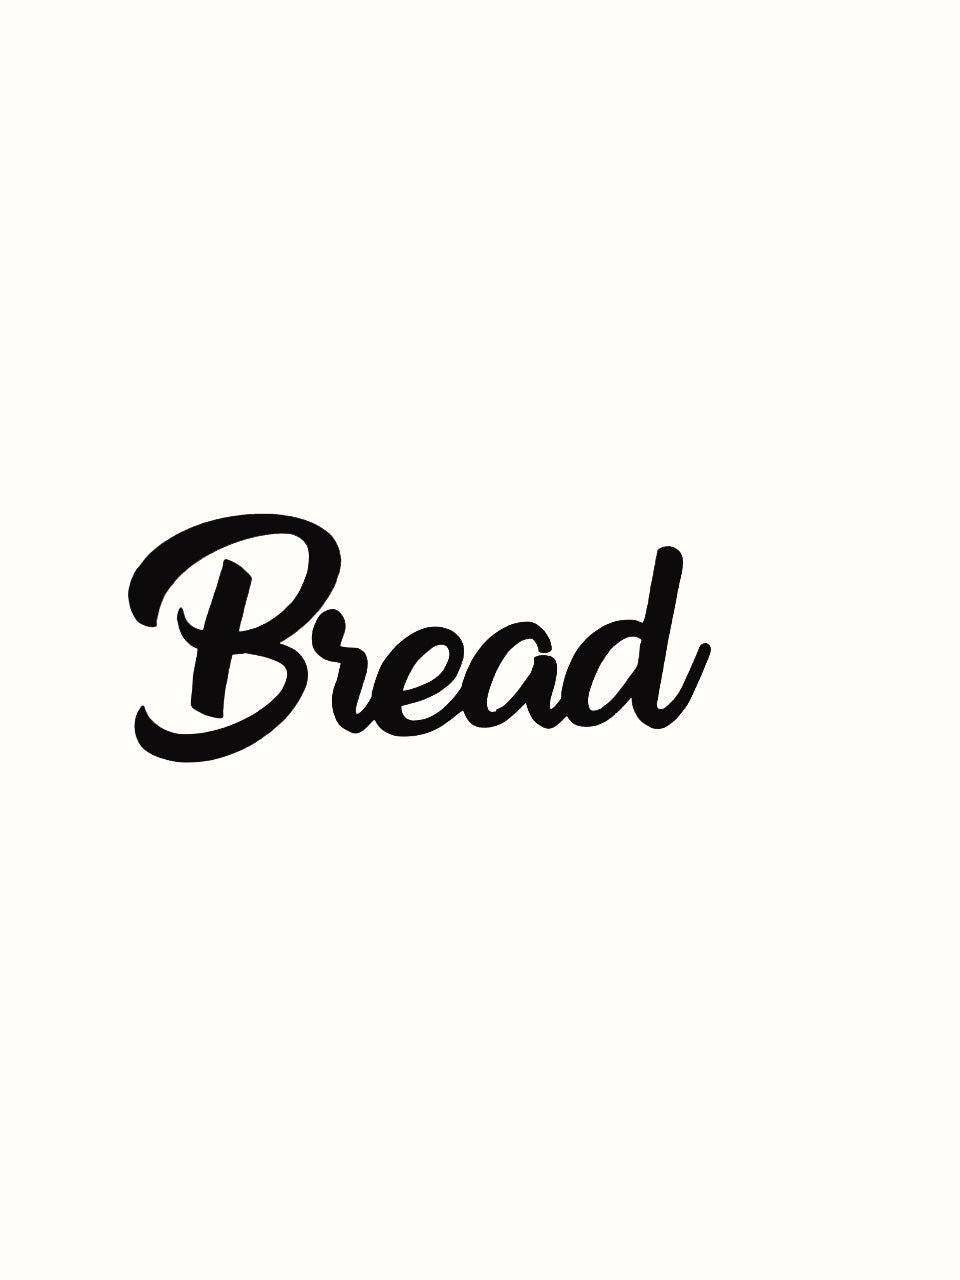 Bread Kitchen Decal - Vinyl Sticker Decal